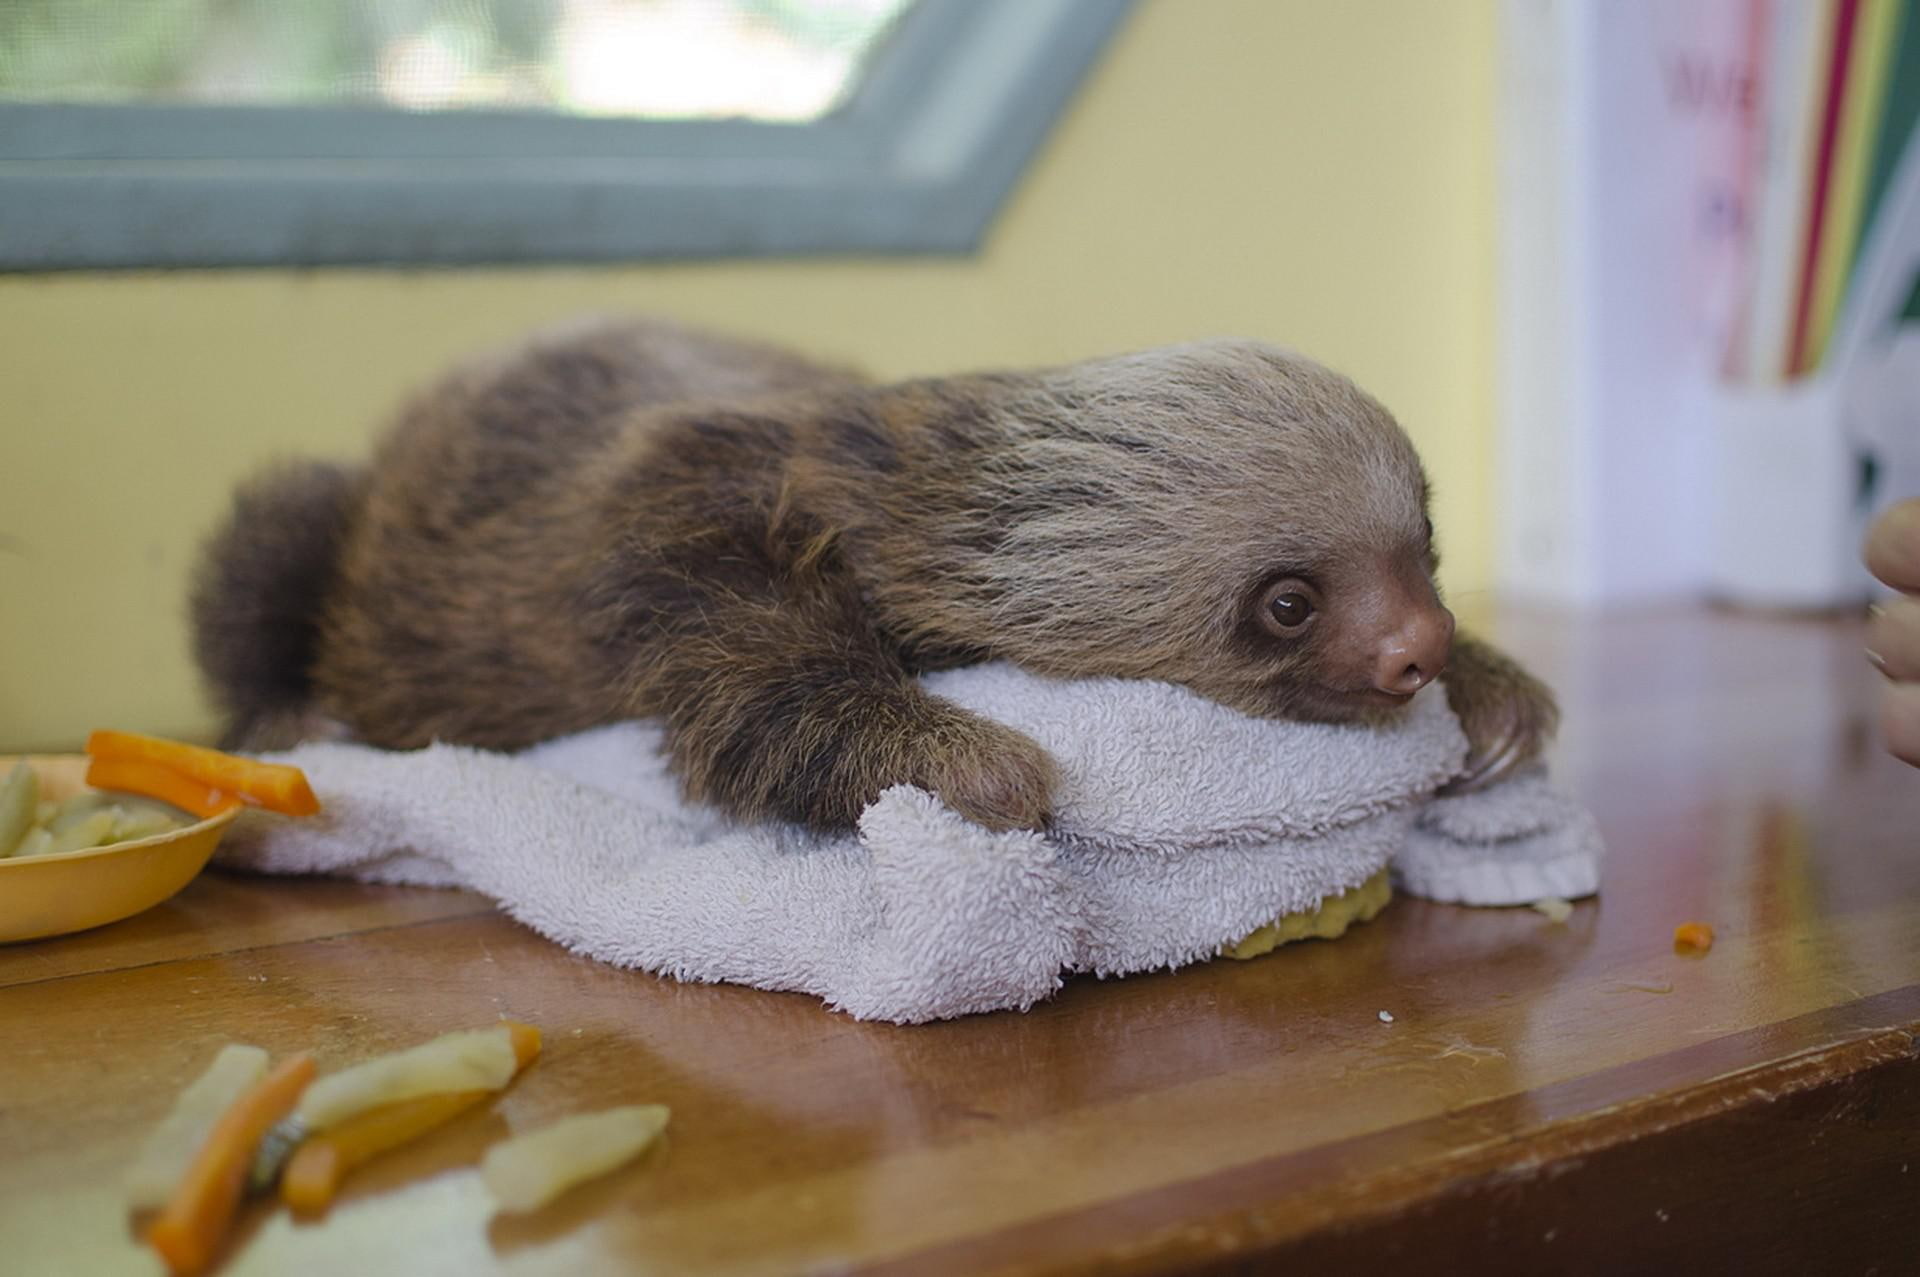 sloth, lying, animal, towel